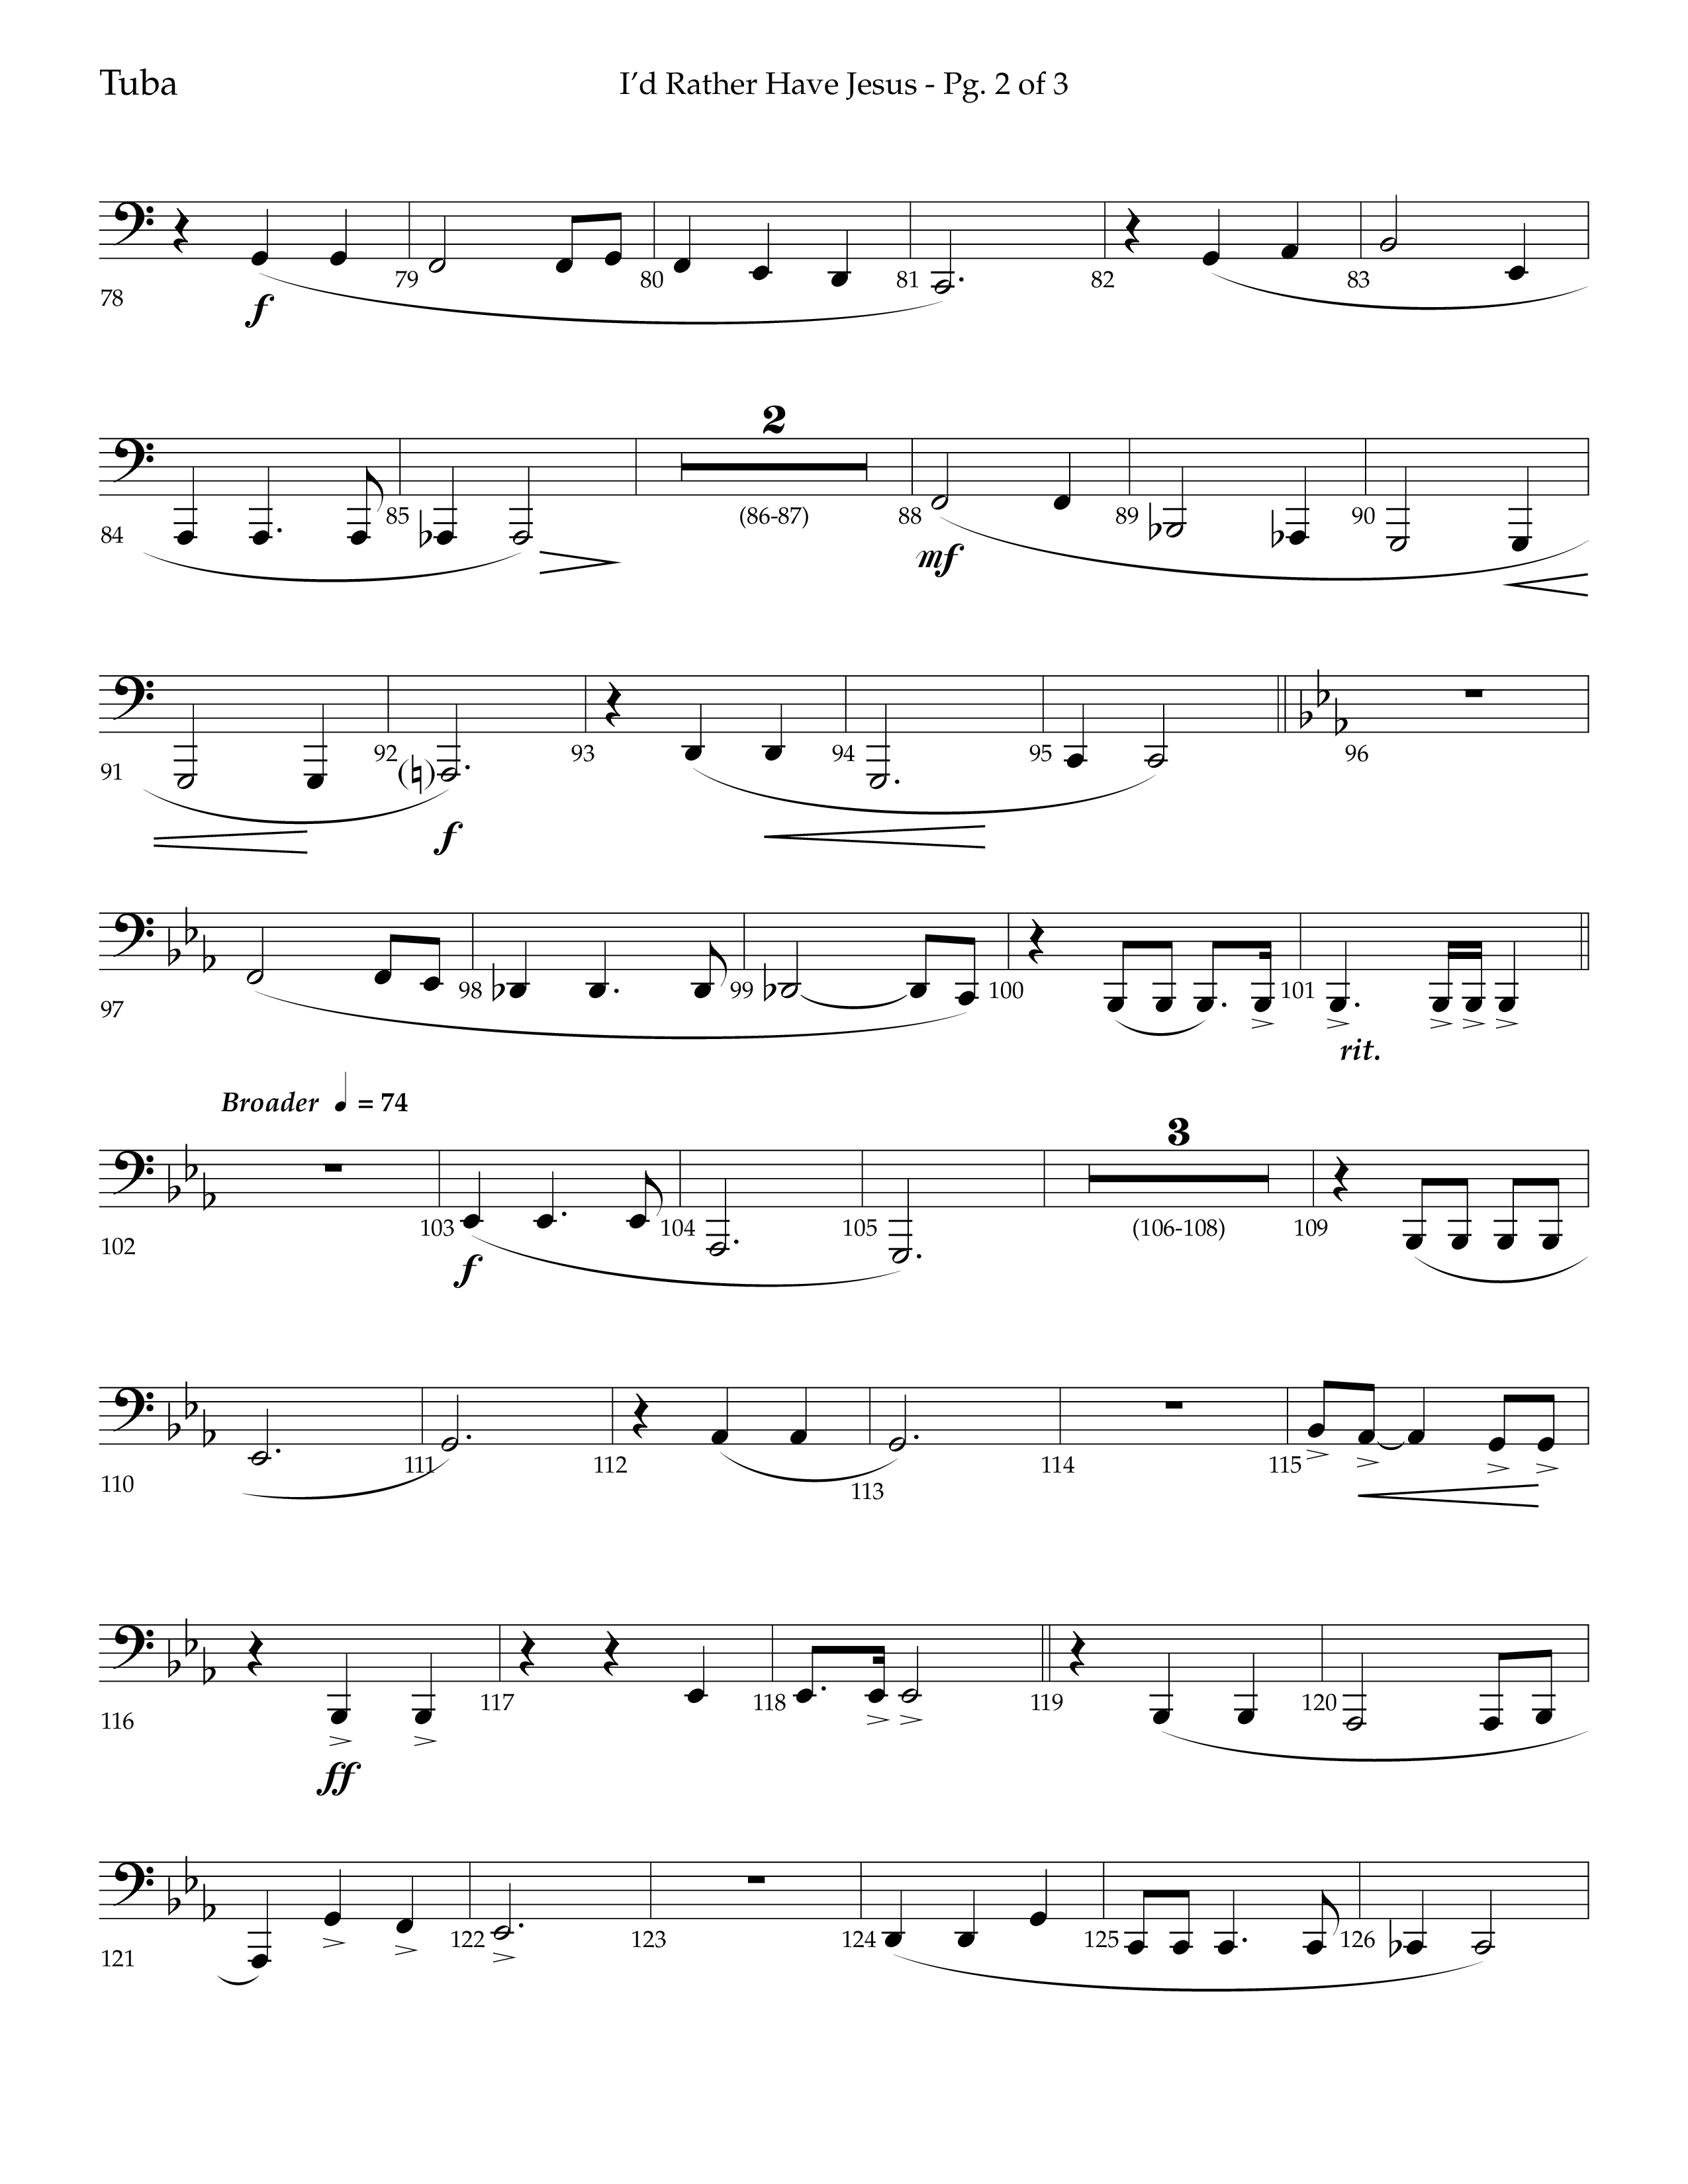 I'd Rather Have Jesus (Choral Anthem SATB) Tuba (Lifeway Choral / Arr. Richard Kingsmore)